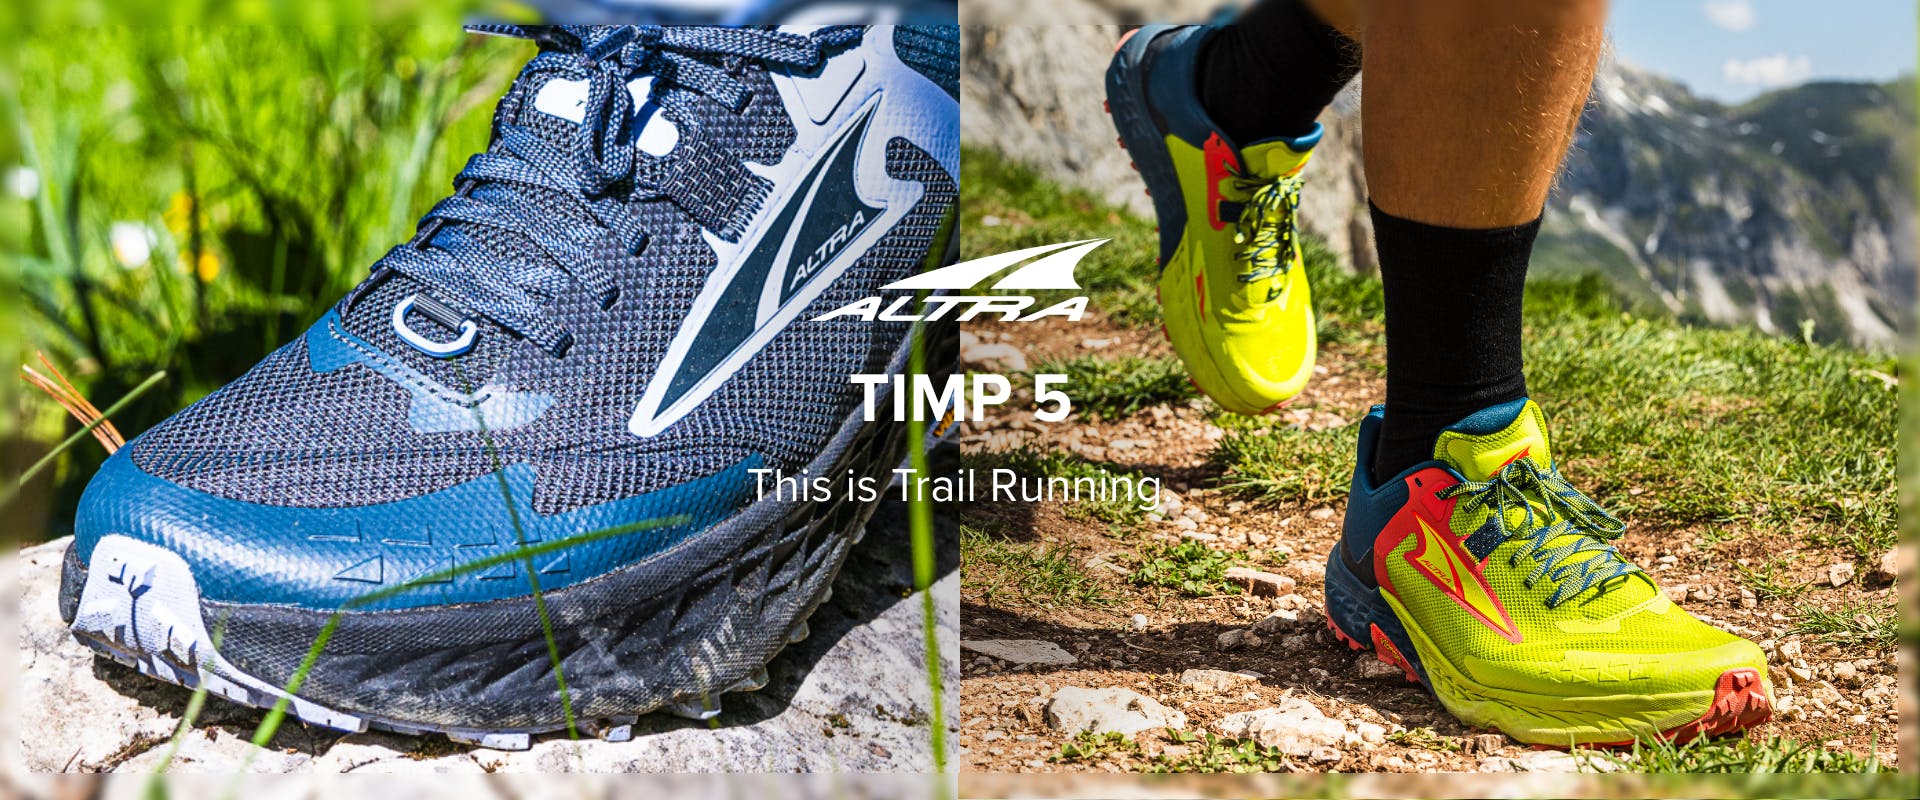 Zapato para Trail Timp 5 Mujer col. ROJO, AMARILLO